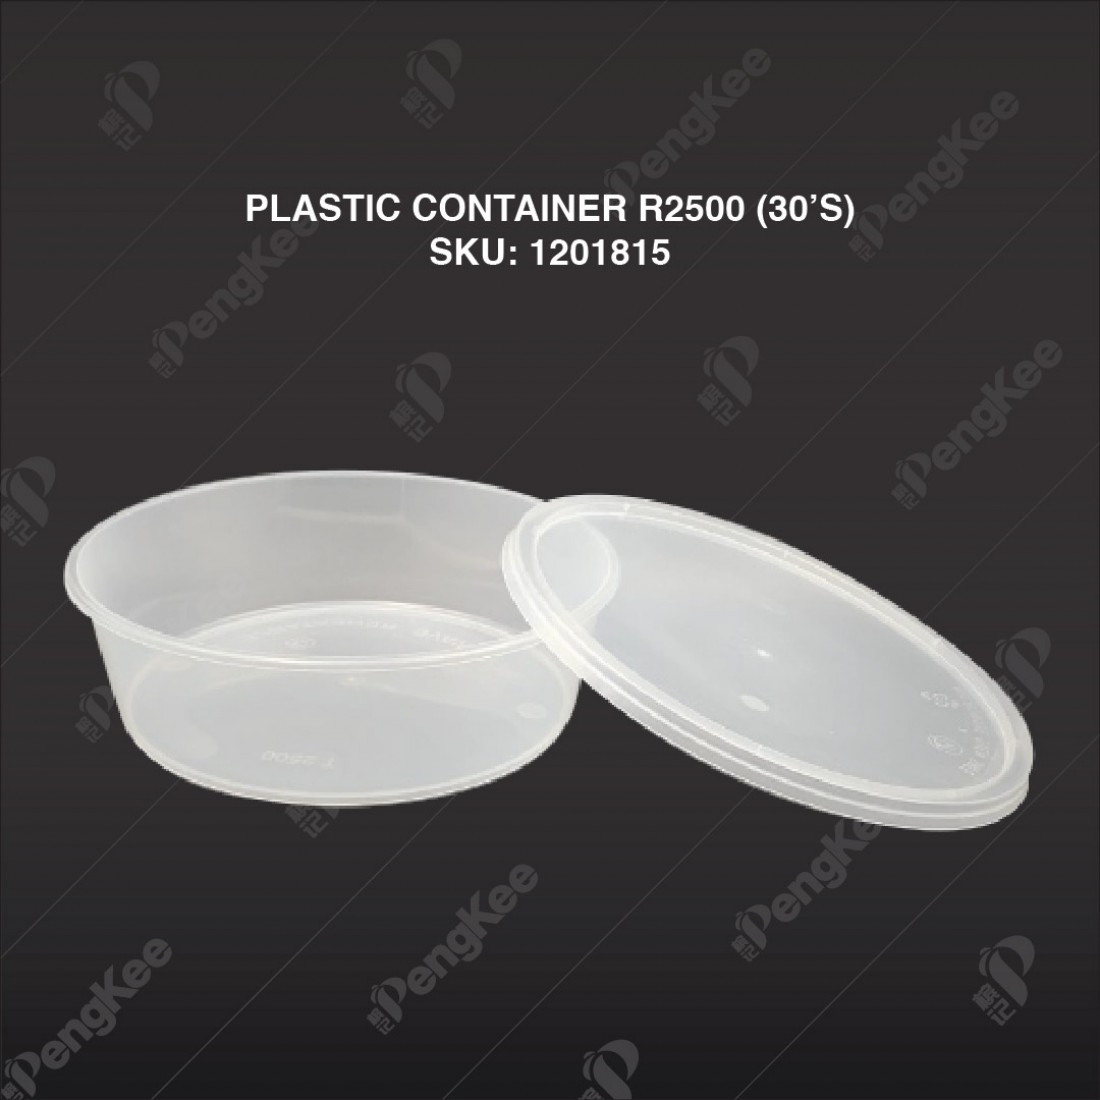 PLASTIC CONTAINER R2500 (ROUND CONTAINER)